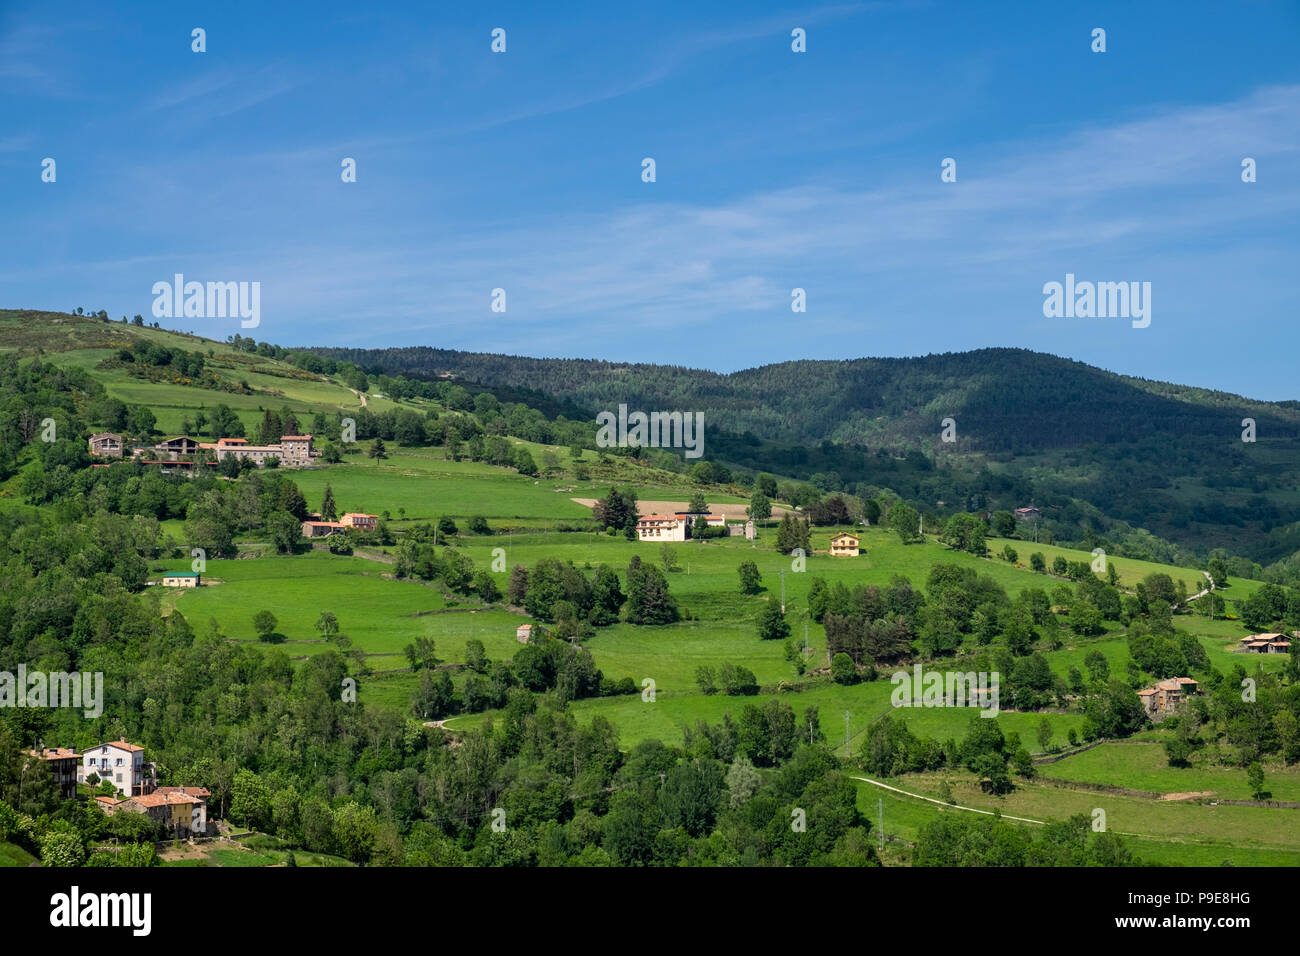 Paesaggio con fattorie e pascoli verdi a mollo, Pirenei, Catalogna, Spagna Foto Stock